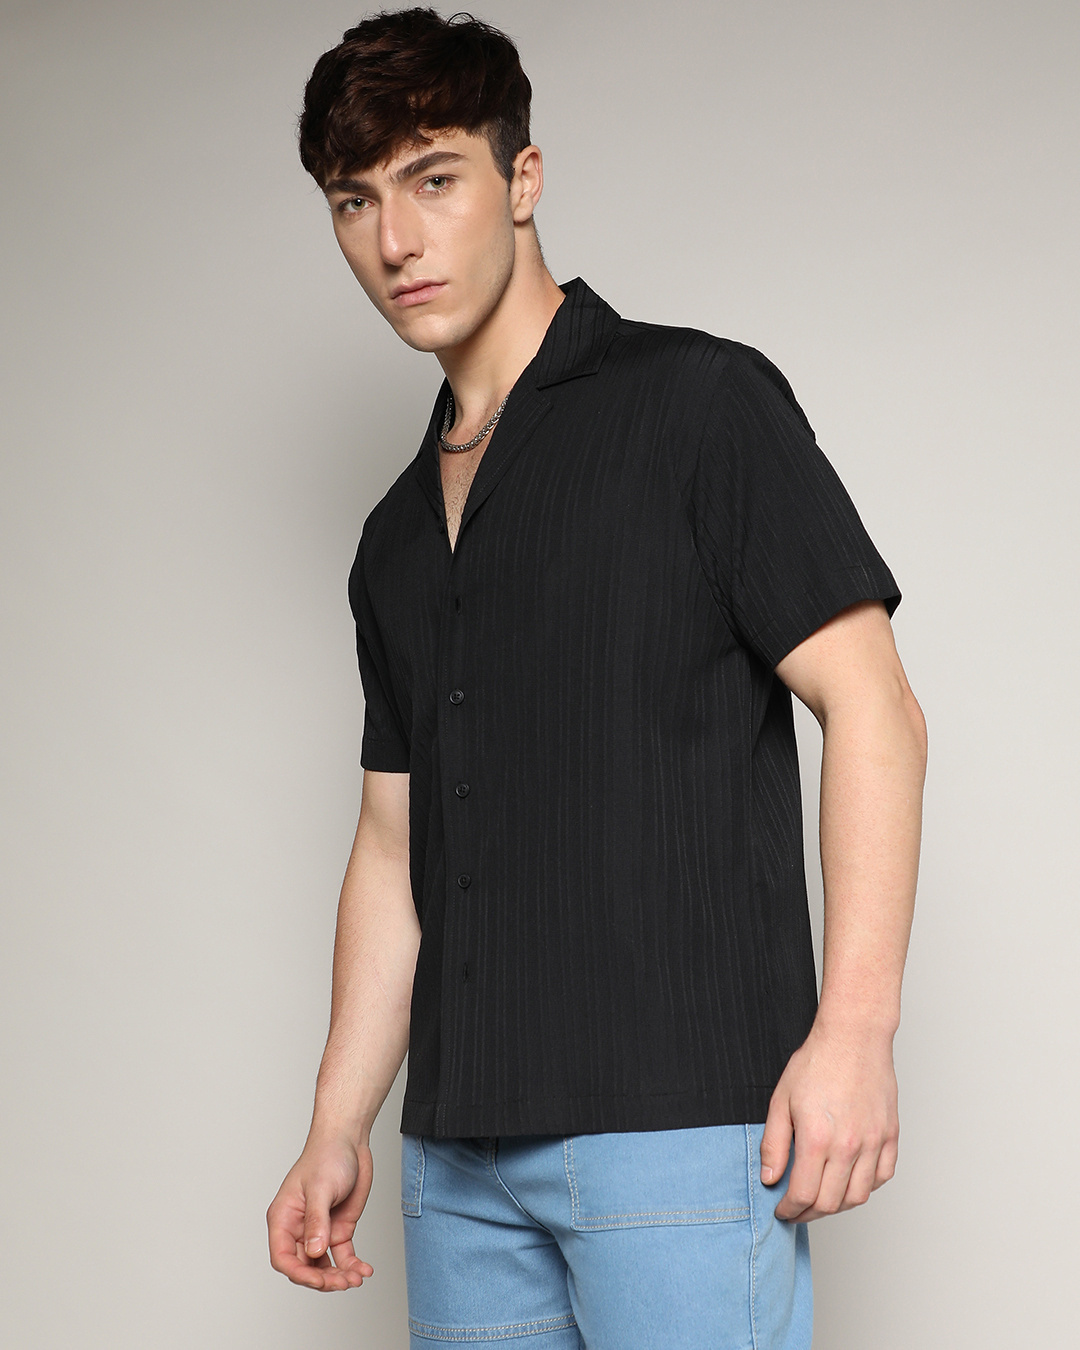 Buy Men's Black Textured Shirt Online at Bewakoof